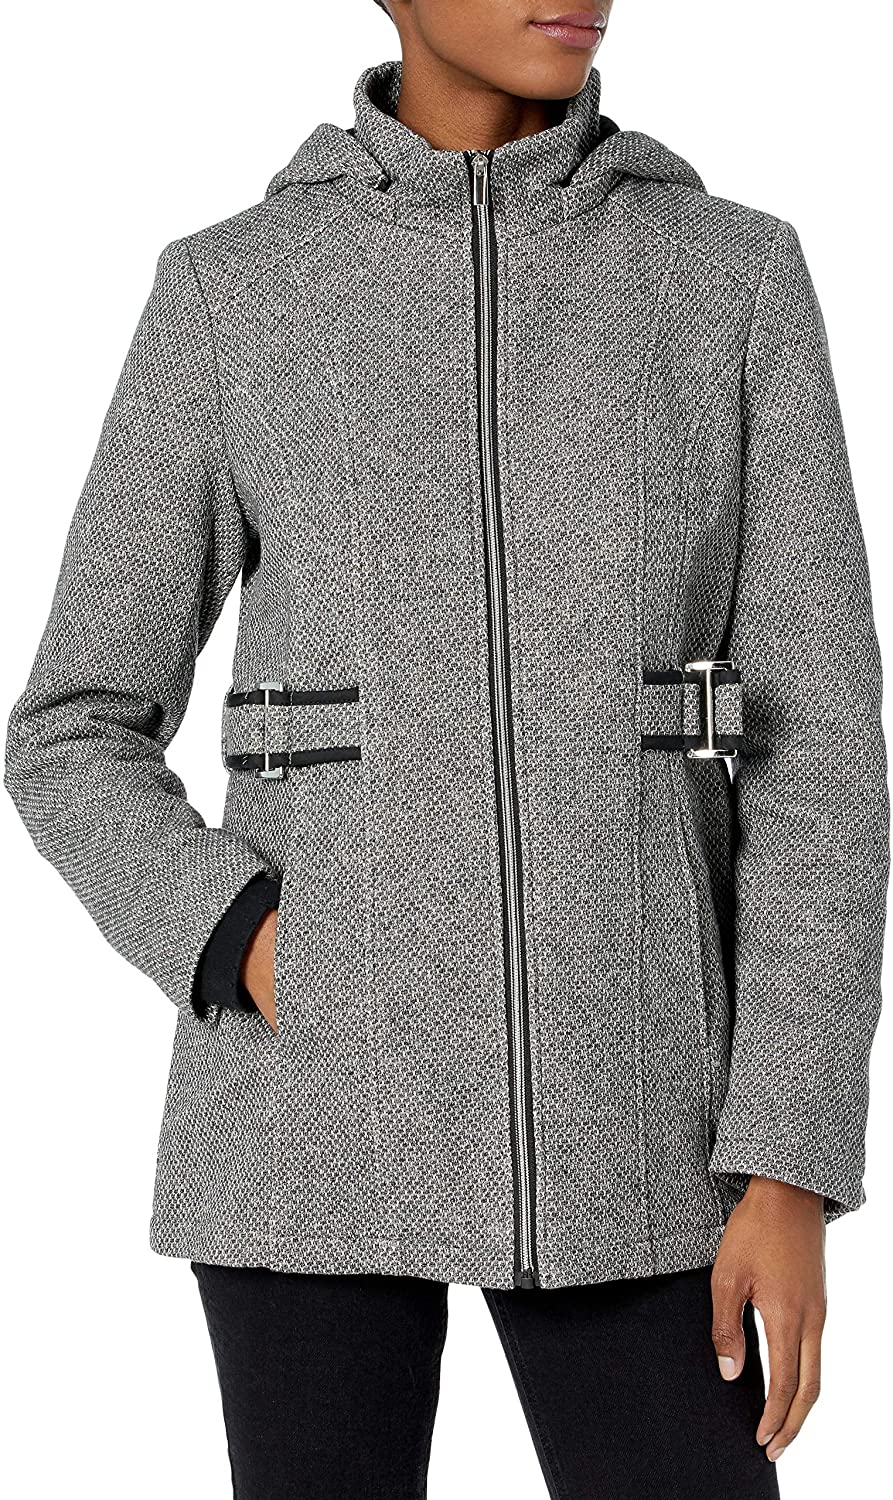 INTL | Fashion Hooded Jacket Women\'s Fleece d.e.t.a.i.l.s eBay Coat